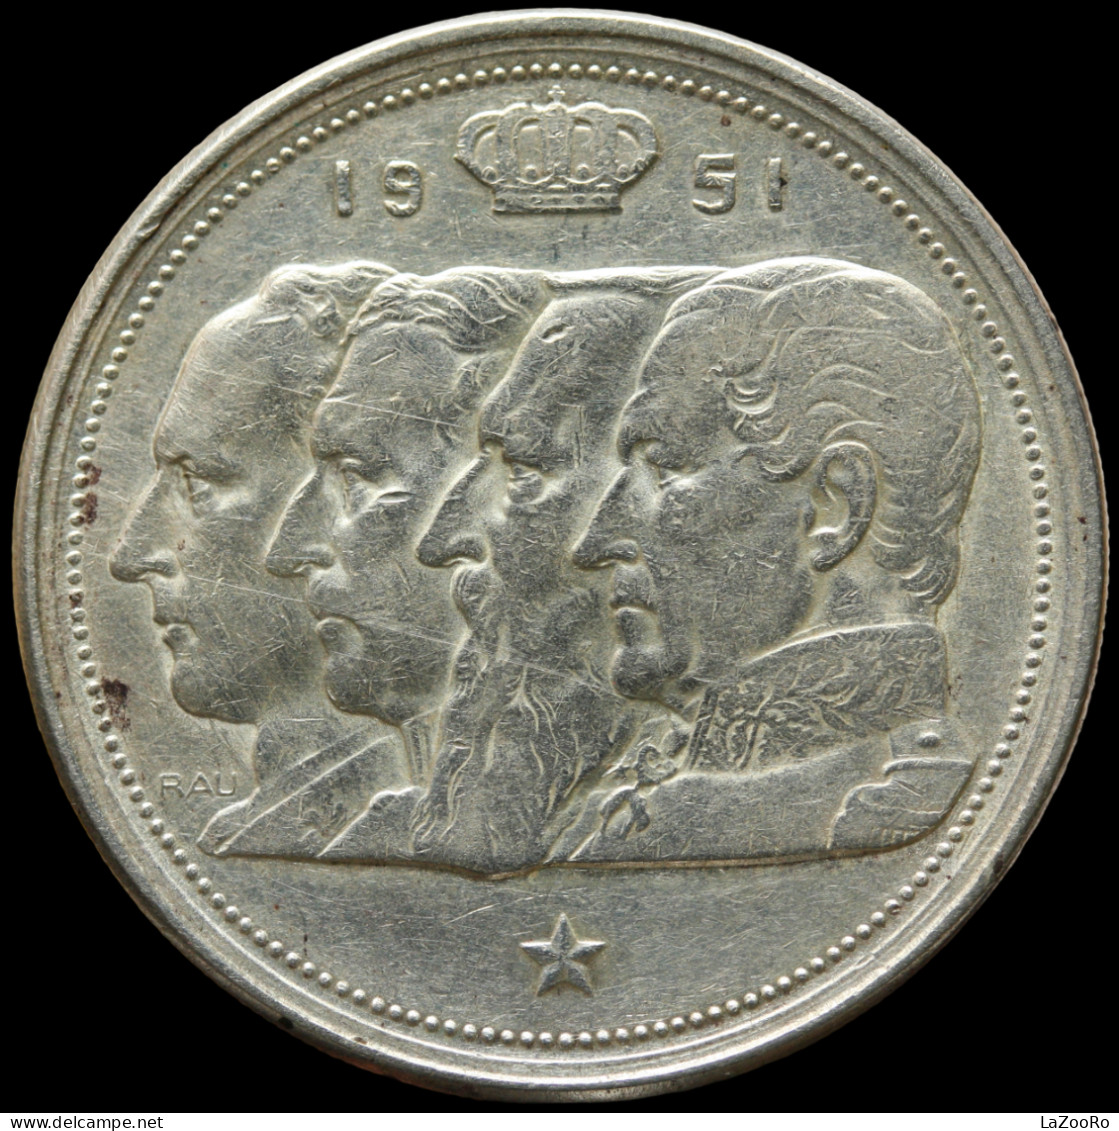 LaZooRo: Belgium 100 Francs Frank 1951 XF / UNC - Silver - 100 Francs